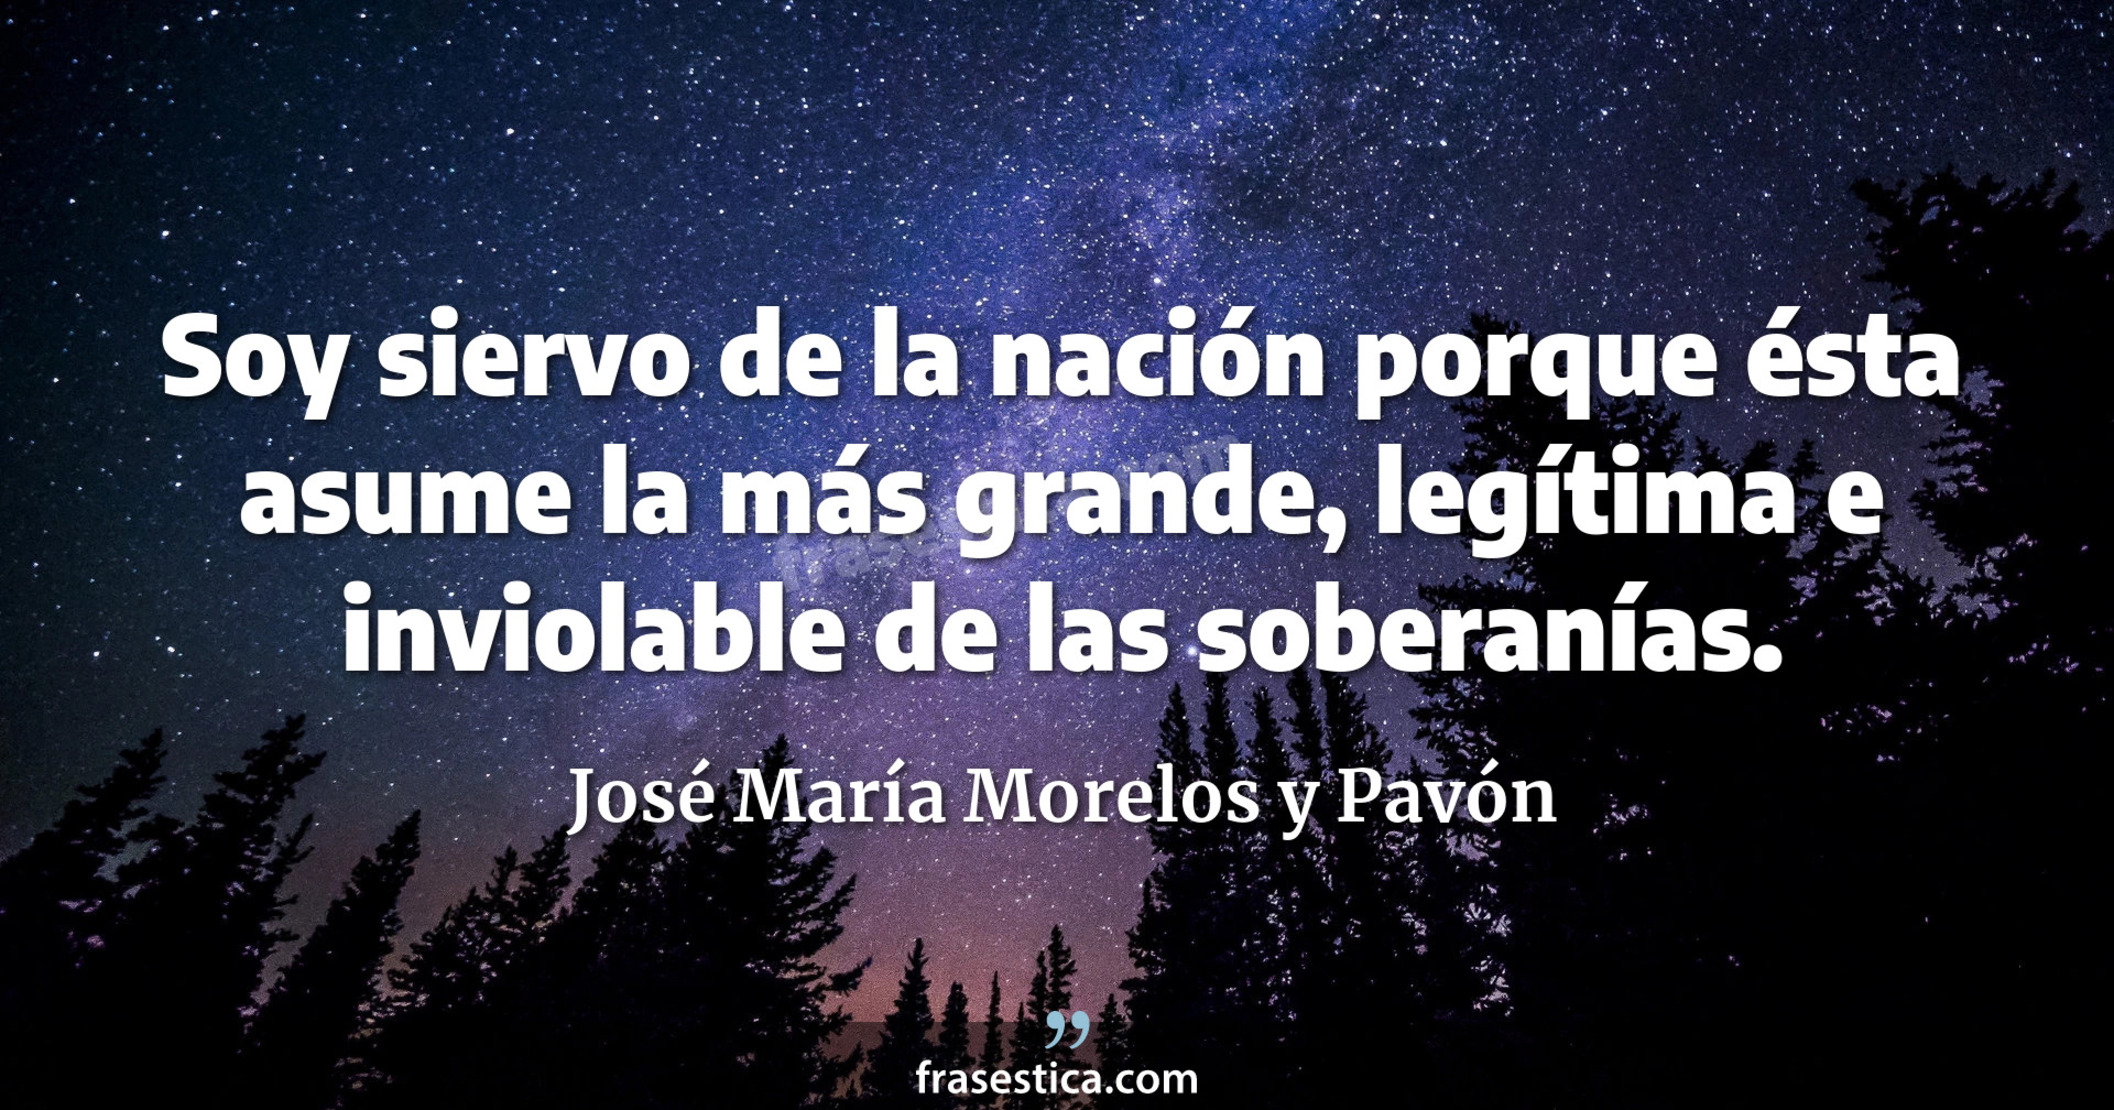 Soy siervo de la nación porque ésta asume la más grande, legítima e inviolable de las soberanías. - José María Morelos y Pavón